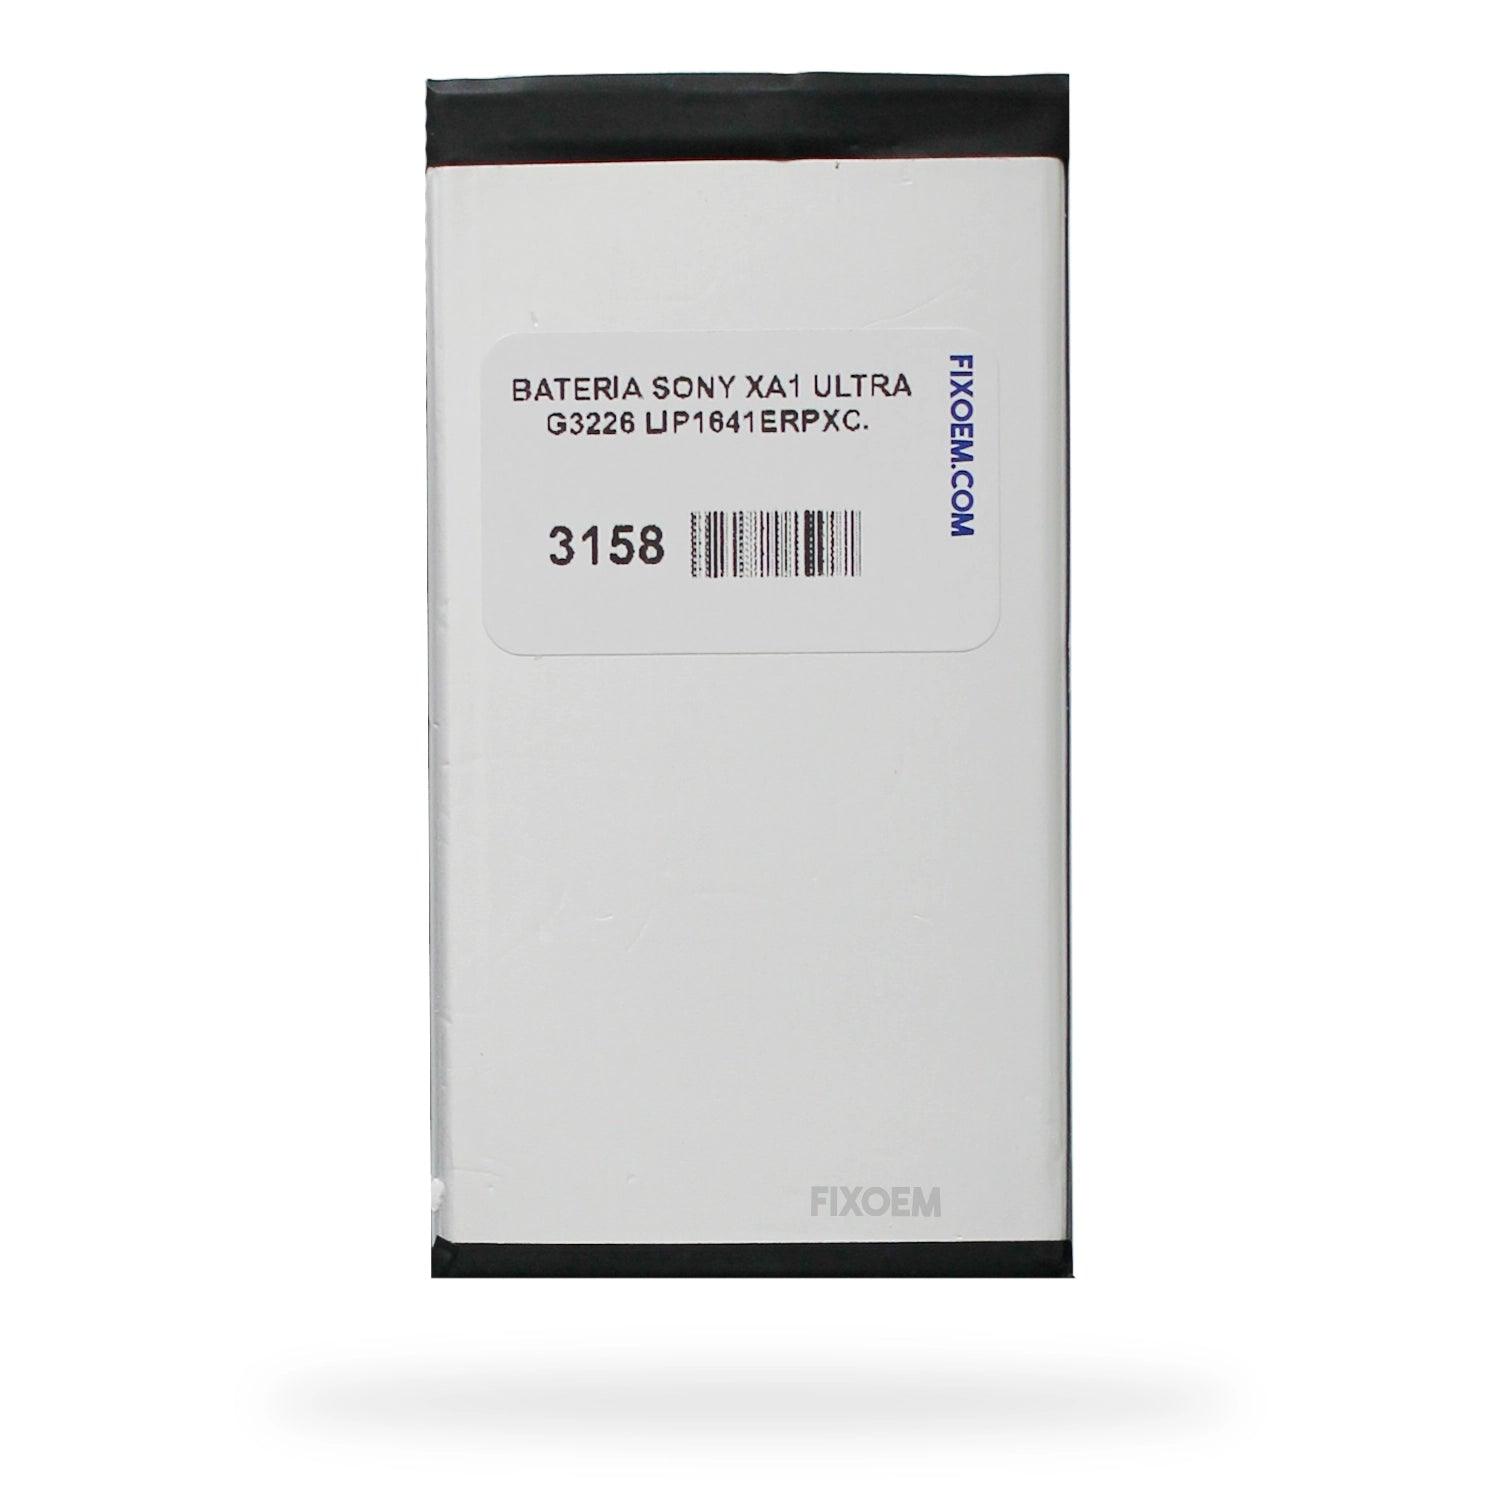 Bateria Sony Xa1 Ultra G3226 Lip1641Erpxc. a solo $ 140.00 Refaccion y puestos celulares, refurbish y microelectronica.- FixOEM